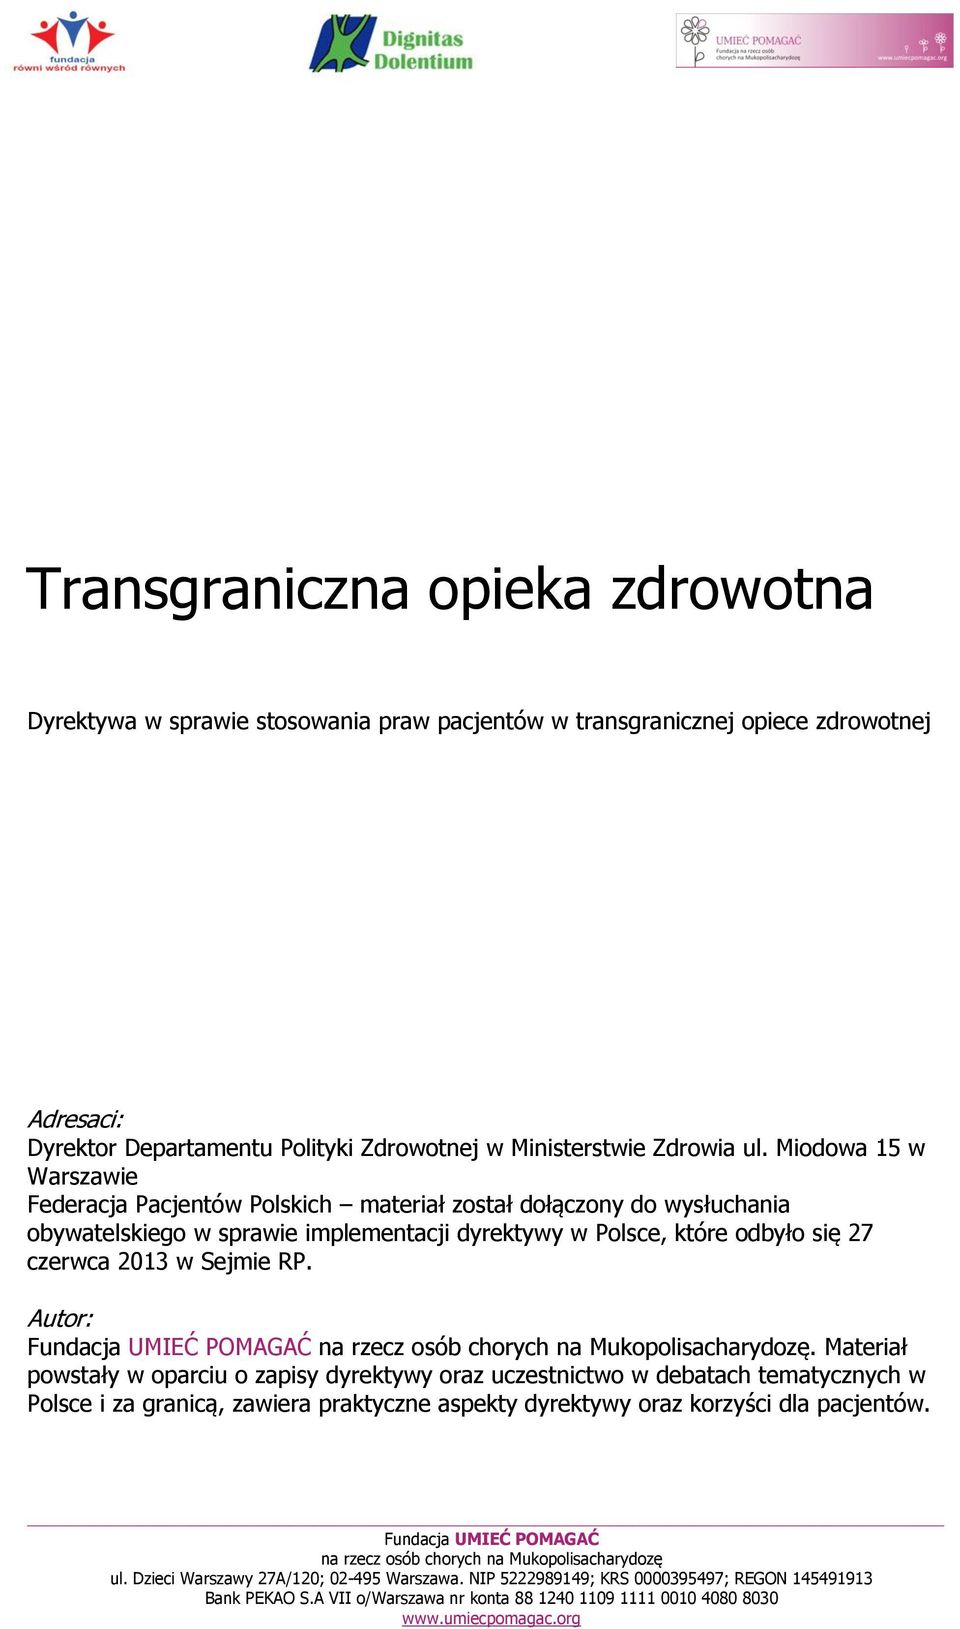 Miodowa 15 w Warszawie Federacja Pacjentów Polskich materiał został dołączony do wysłuchania obywatelskiego w sprawie implementacji dyrektywy w